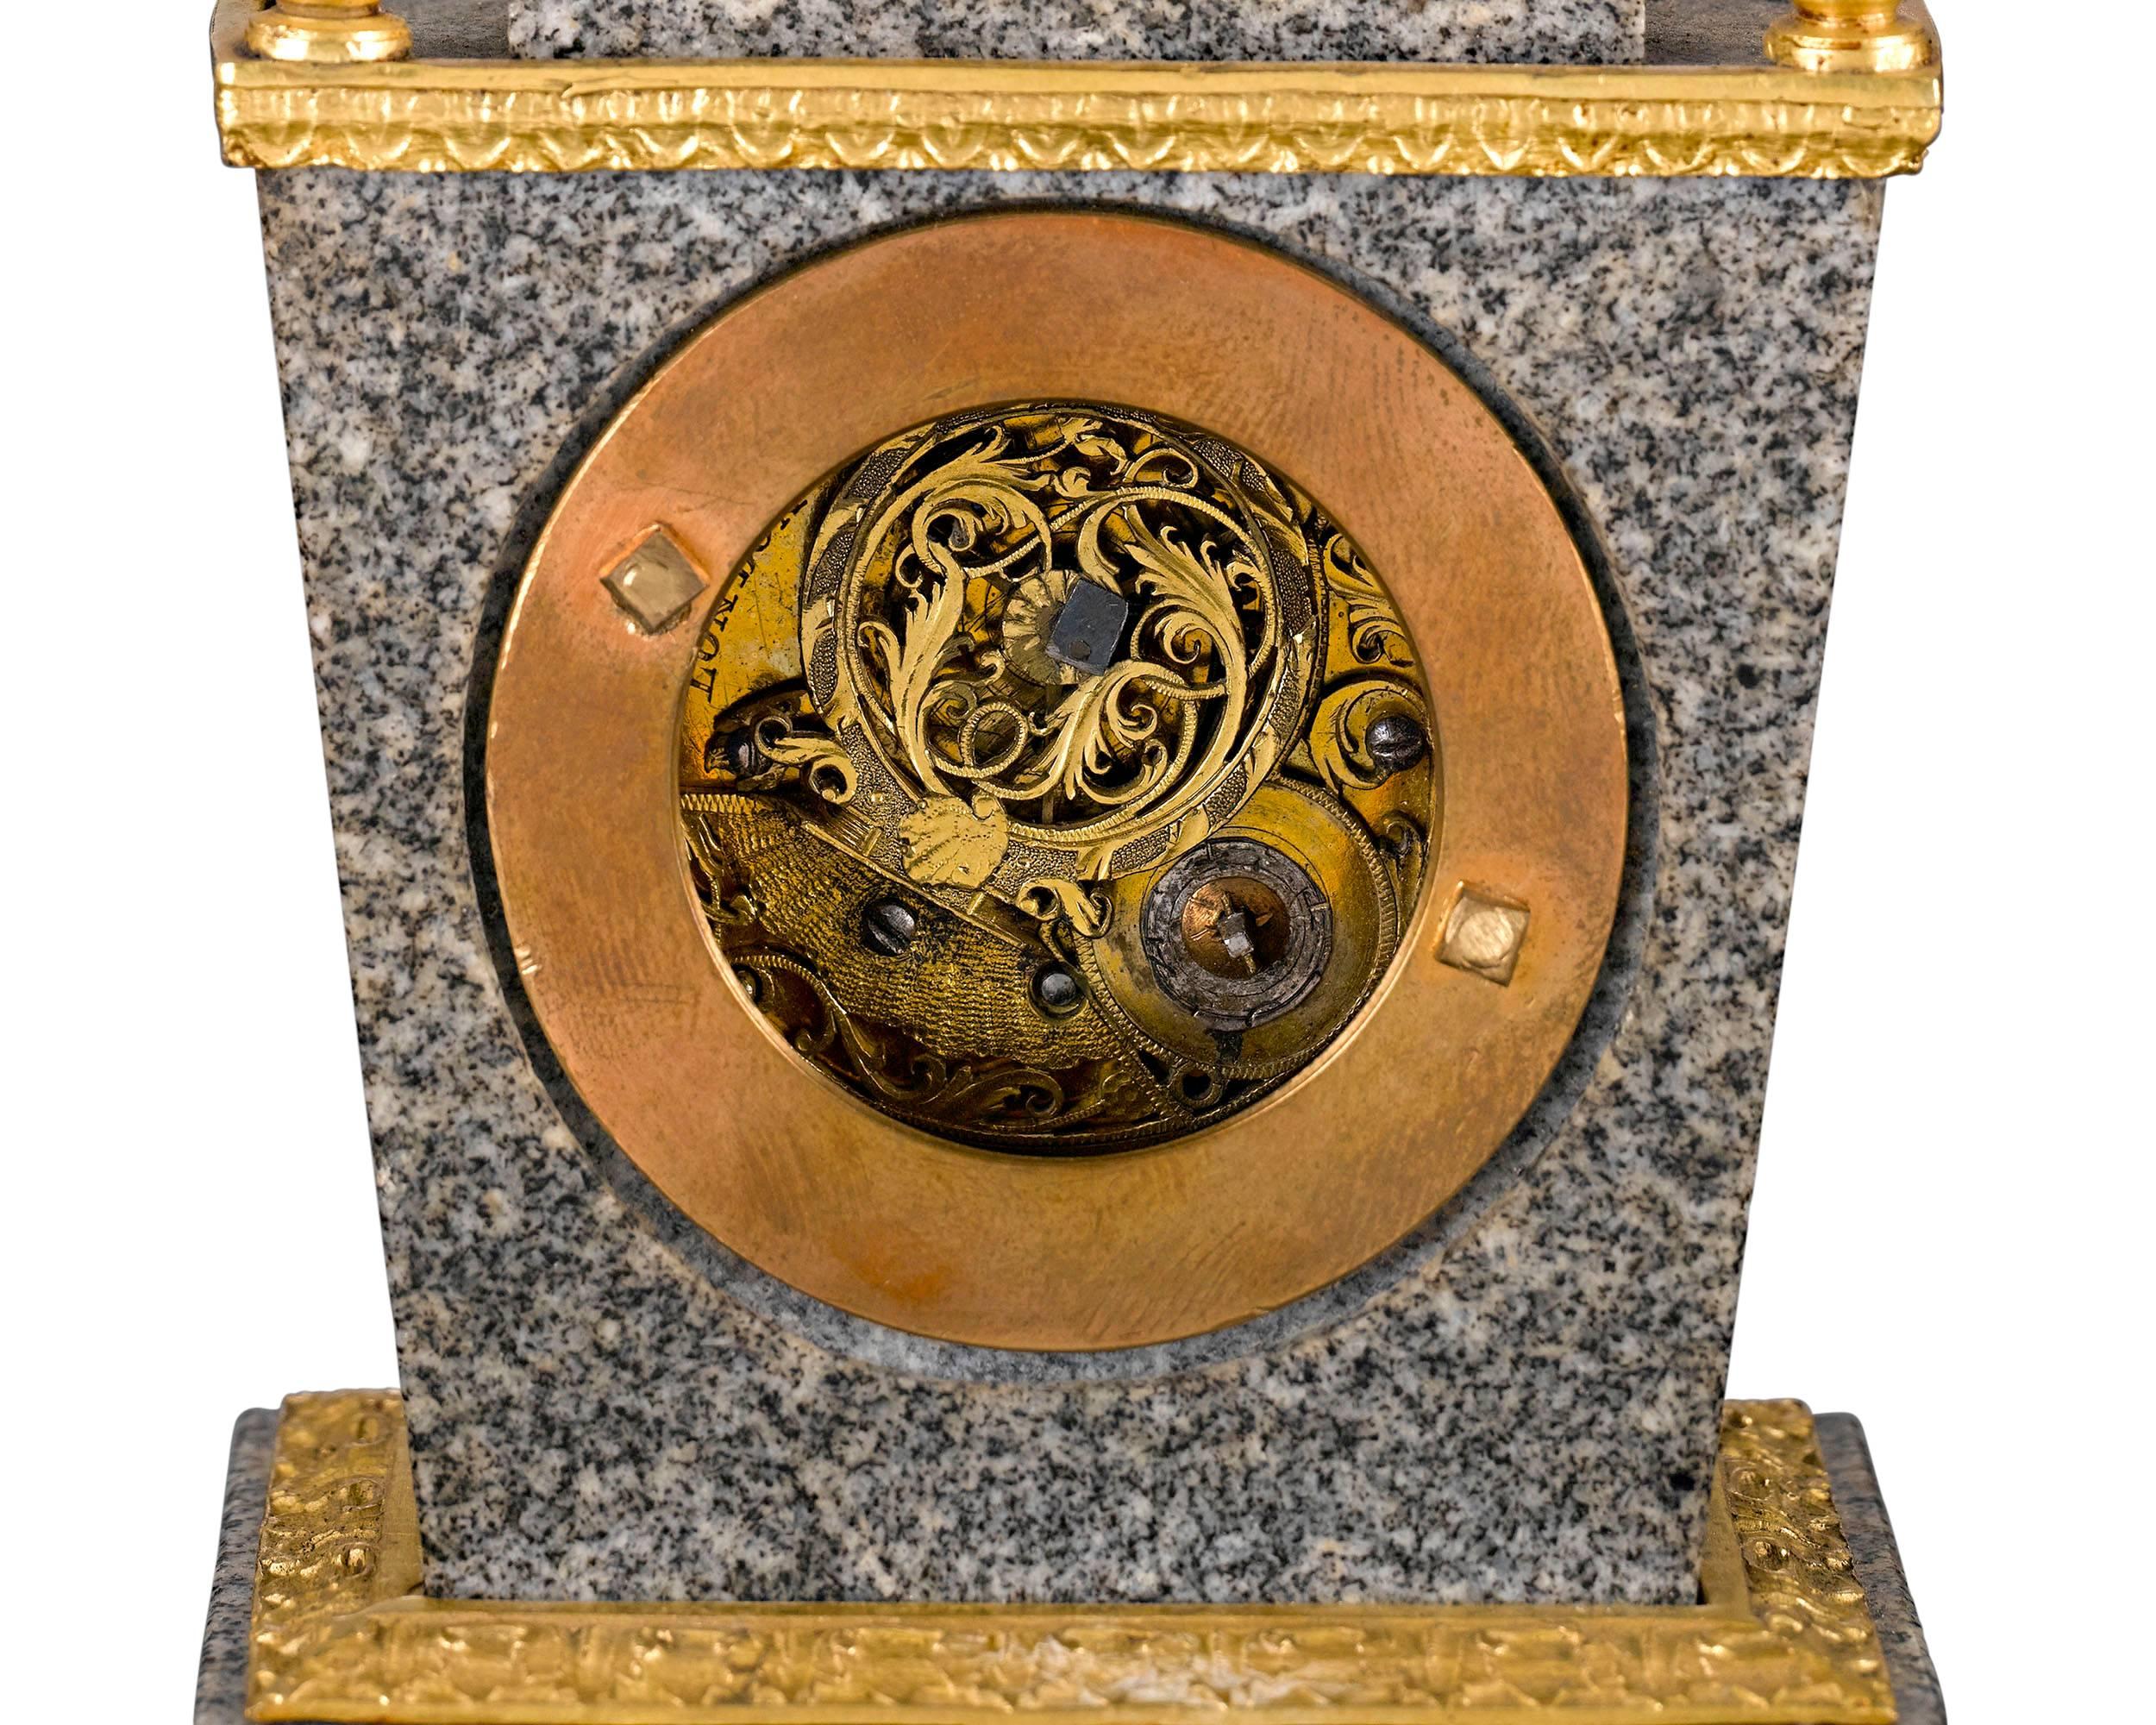 Ein Gehäuse aus erlesenem Porphyr und Doré-Bronze beherbergt das Spindelwerk dieser seltenen Uhr des bedeutenden englischen Uhrmachers John Ellicott. Ellicotts Kreationen gelten als die besten englischen Zeitmesser des 18. Jahrhunderts, und seine